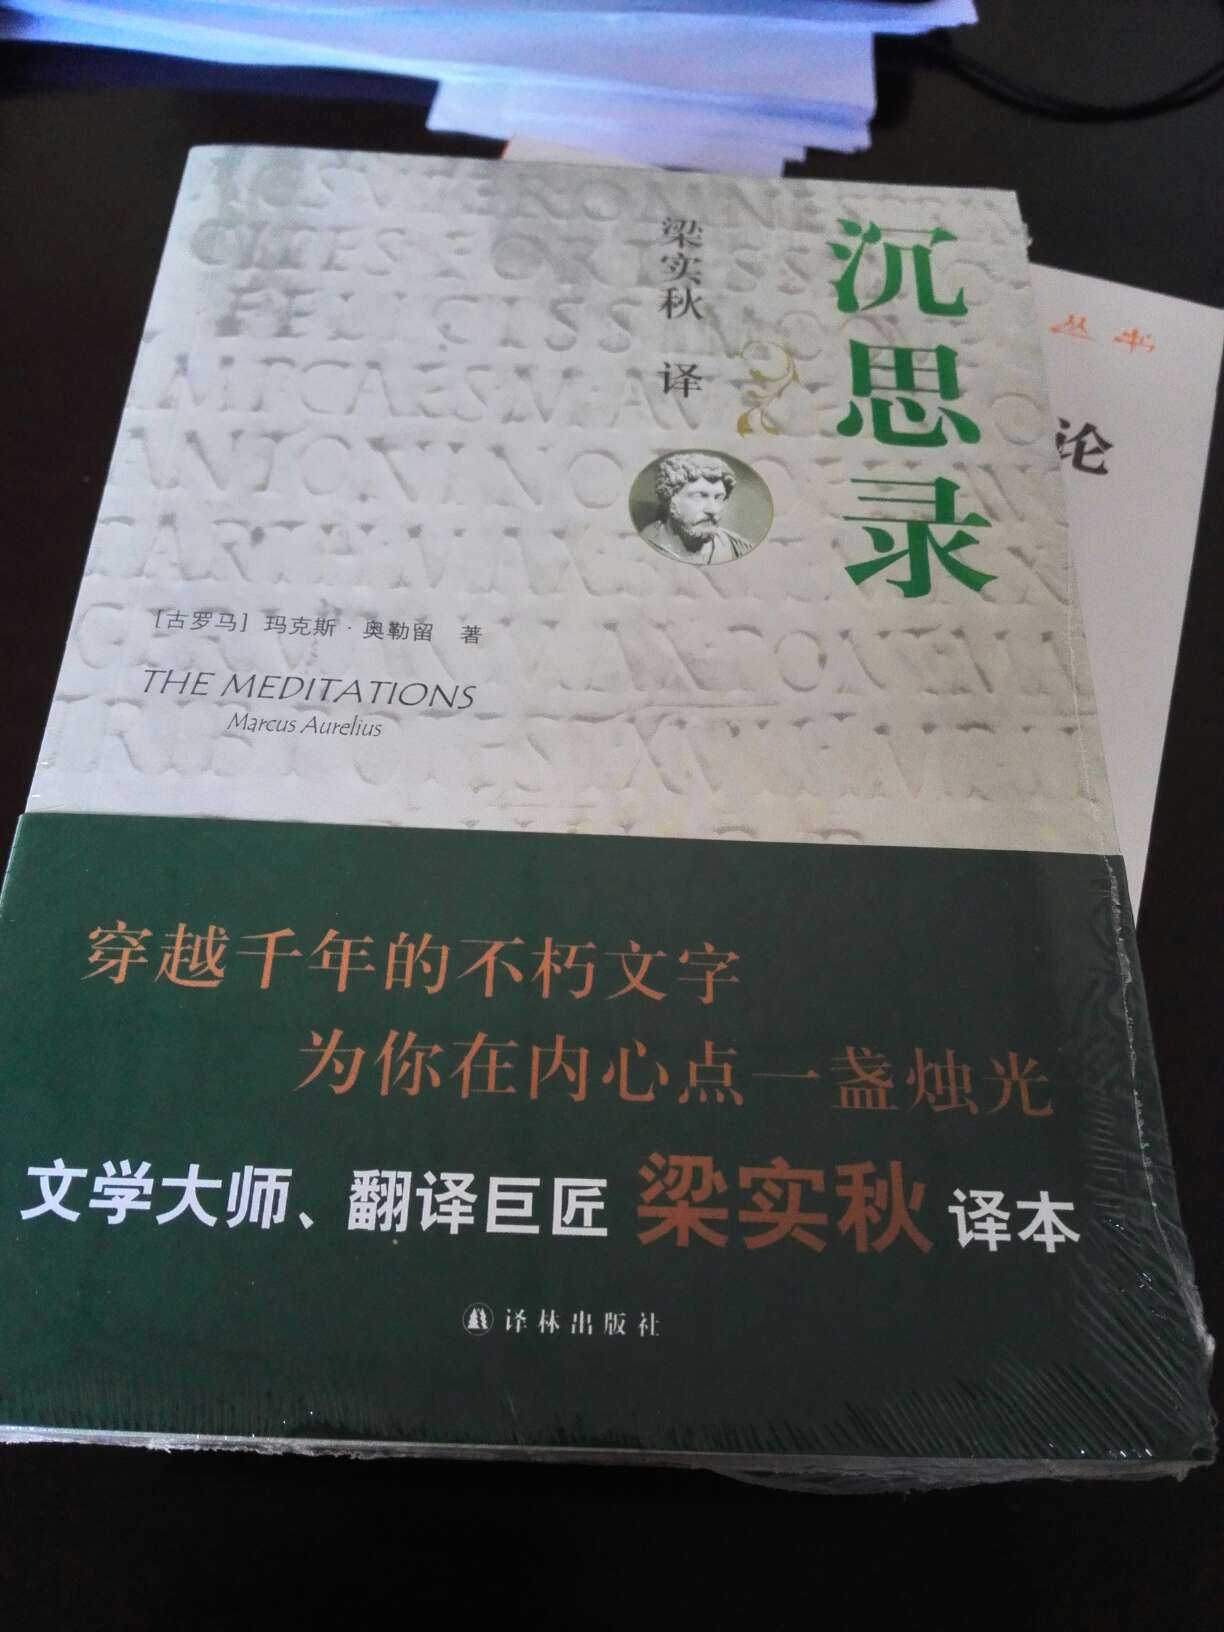 大师翻译的著作怀着哦重庆的心情去阅读并且嗯啊我们自身的哪一些内容这是一本非常值得阅读和推荐的好书感谢平台